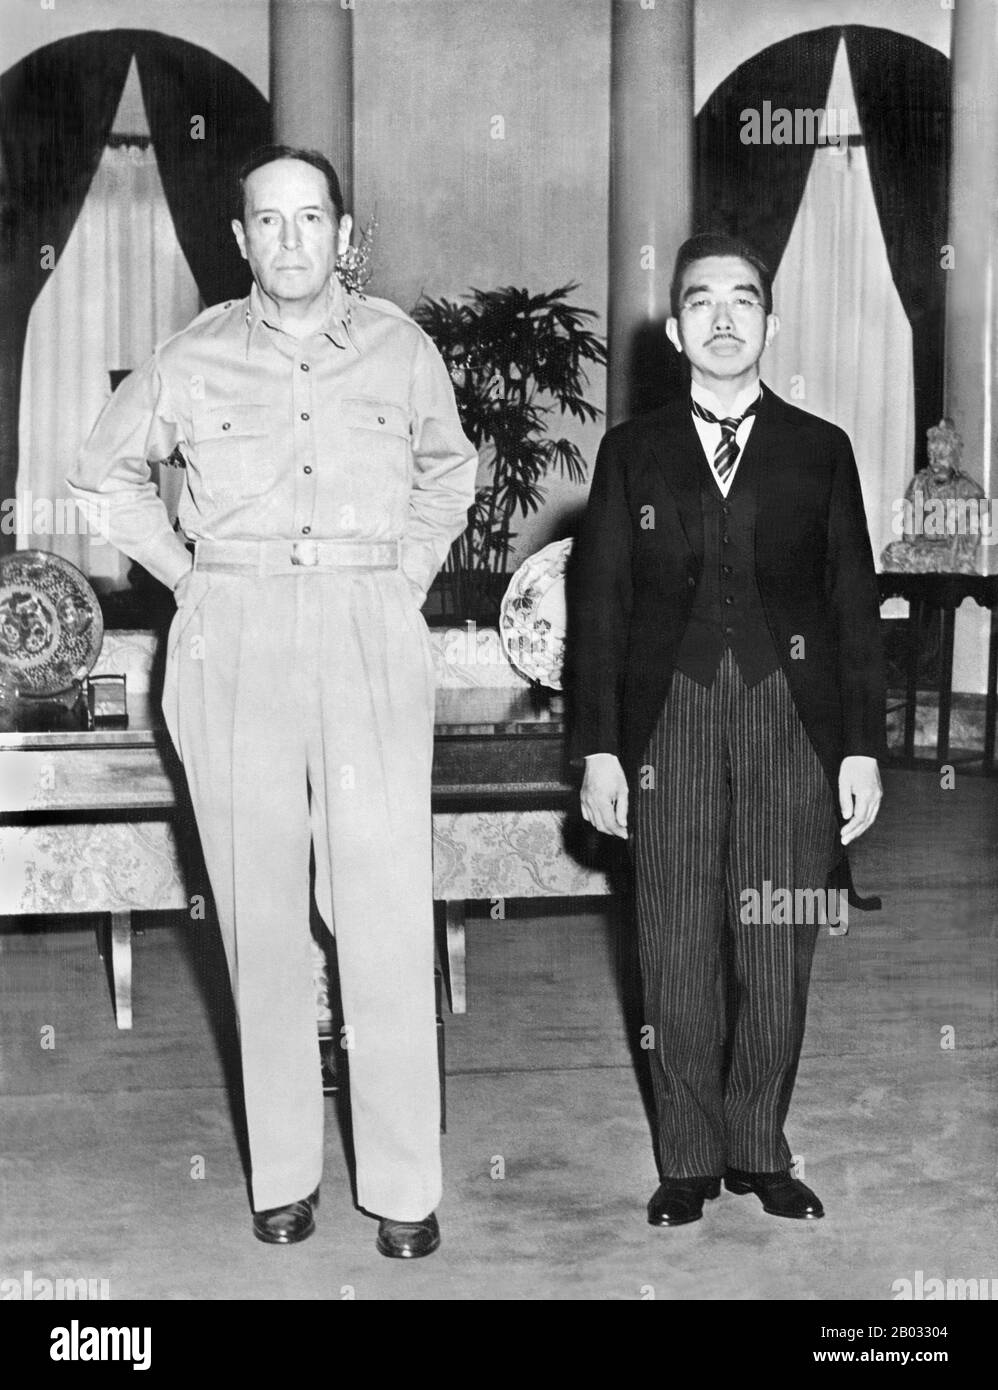 Am 27. September 1945 stattete Kaiser Hirohito dem US-Armeegeneral Douglas MacArthur in der Botschaft der Vereinigten Staaten in Tokio einen Besuch ab. Bis auf den persönlichen Übersetzer des Kaisers (er sprach den kaiserlichen Japanischen, der für das einheimische Japanisch schwer verständlich war) war sein Gefolge höflich, aber effektiv von der Versammlung ausgeschlossen. Stockfoto